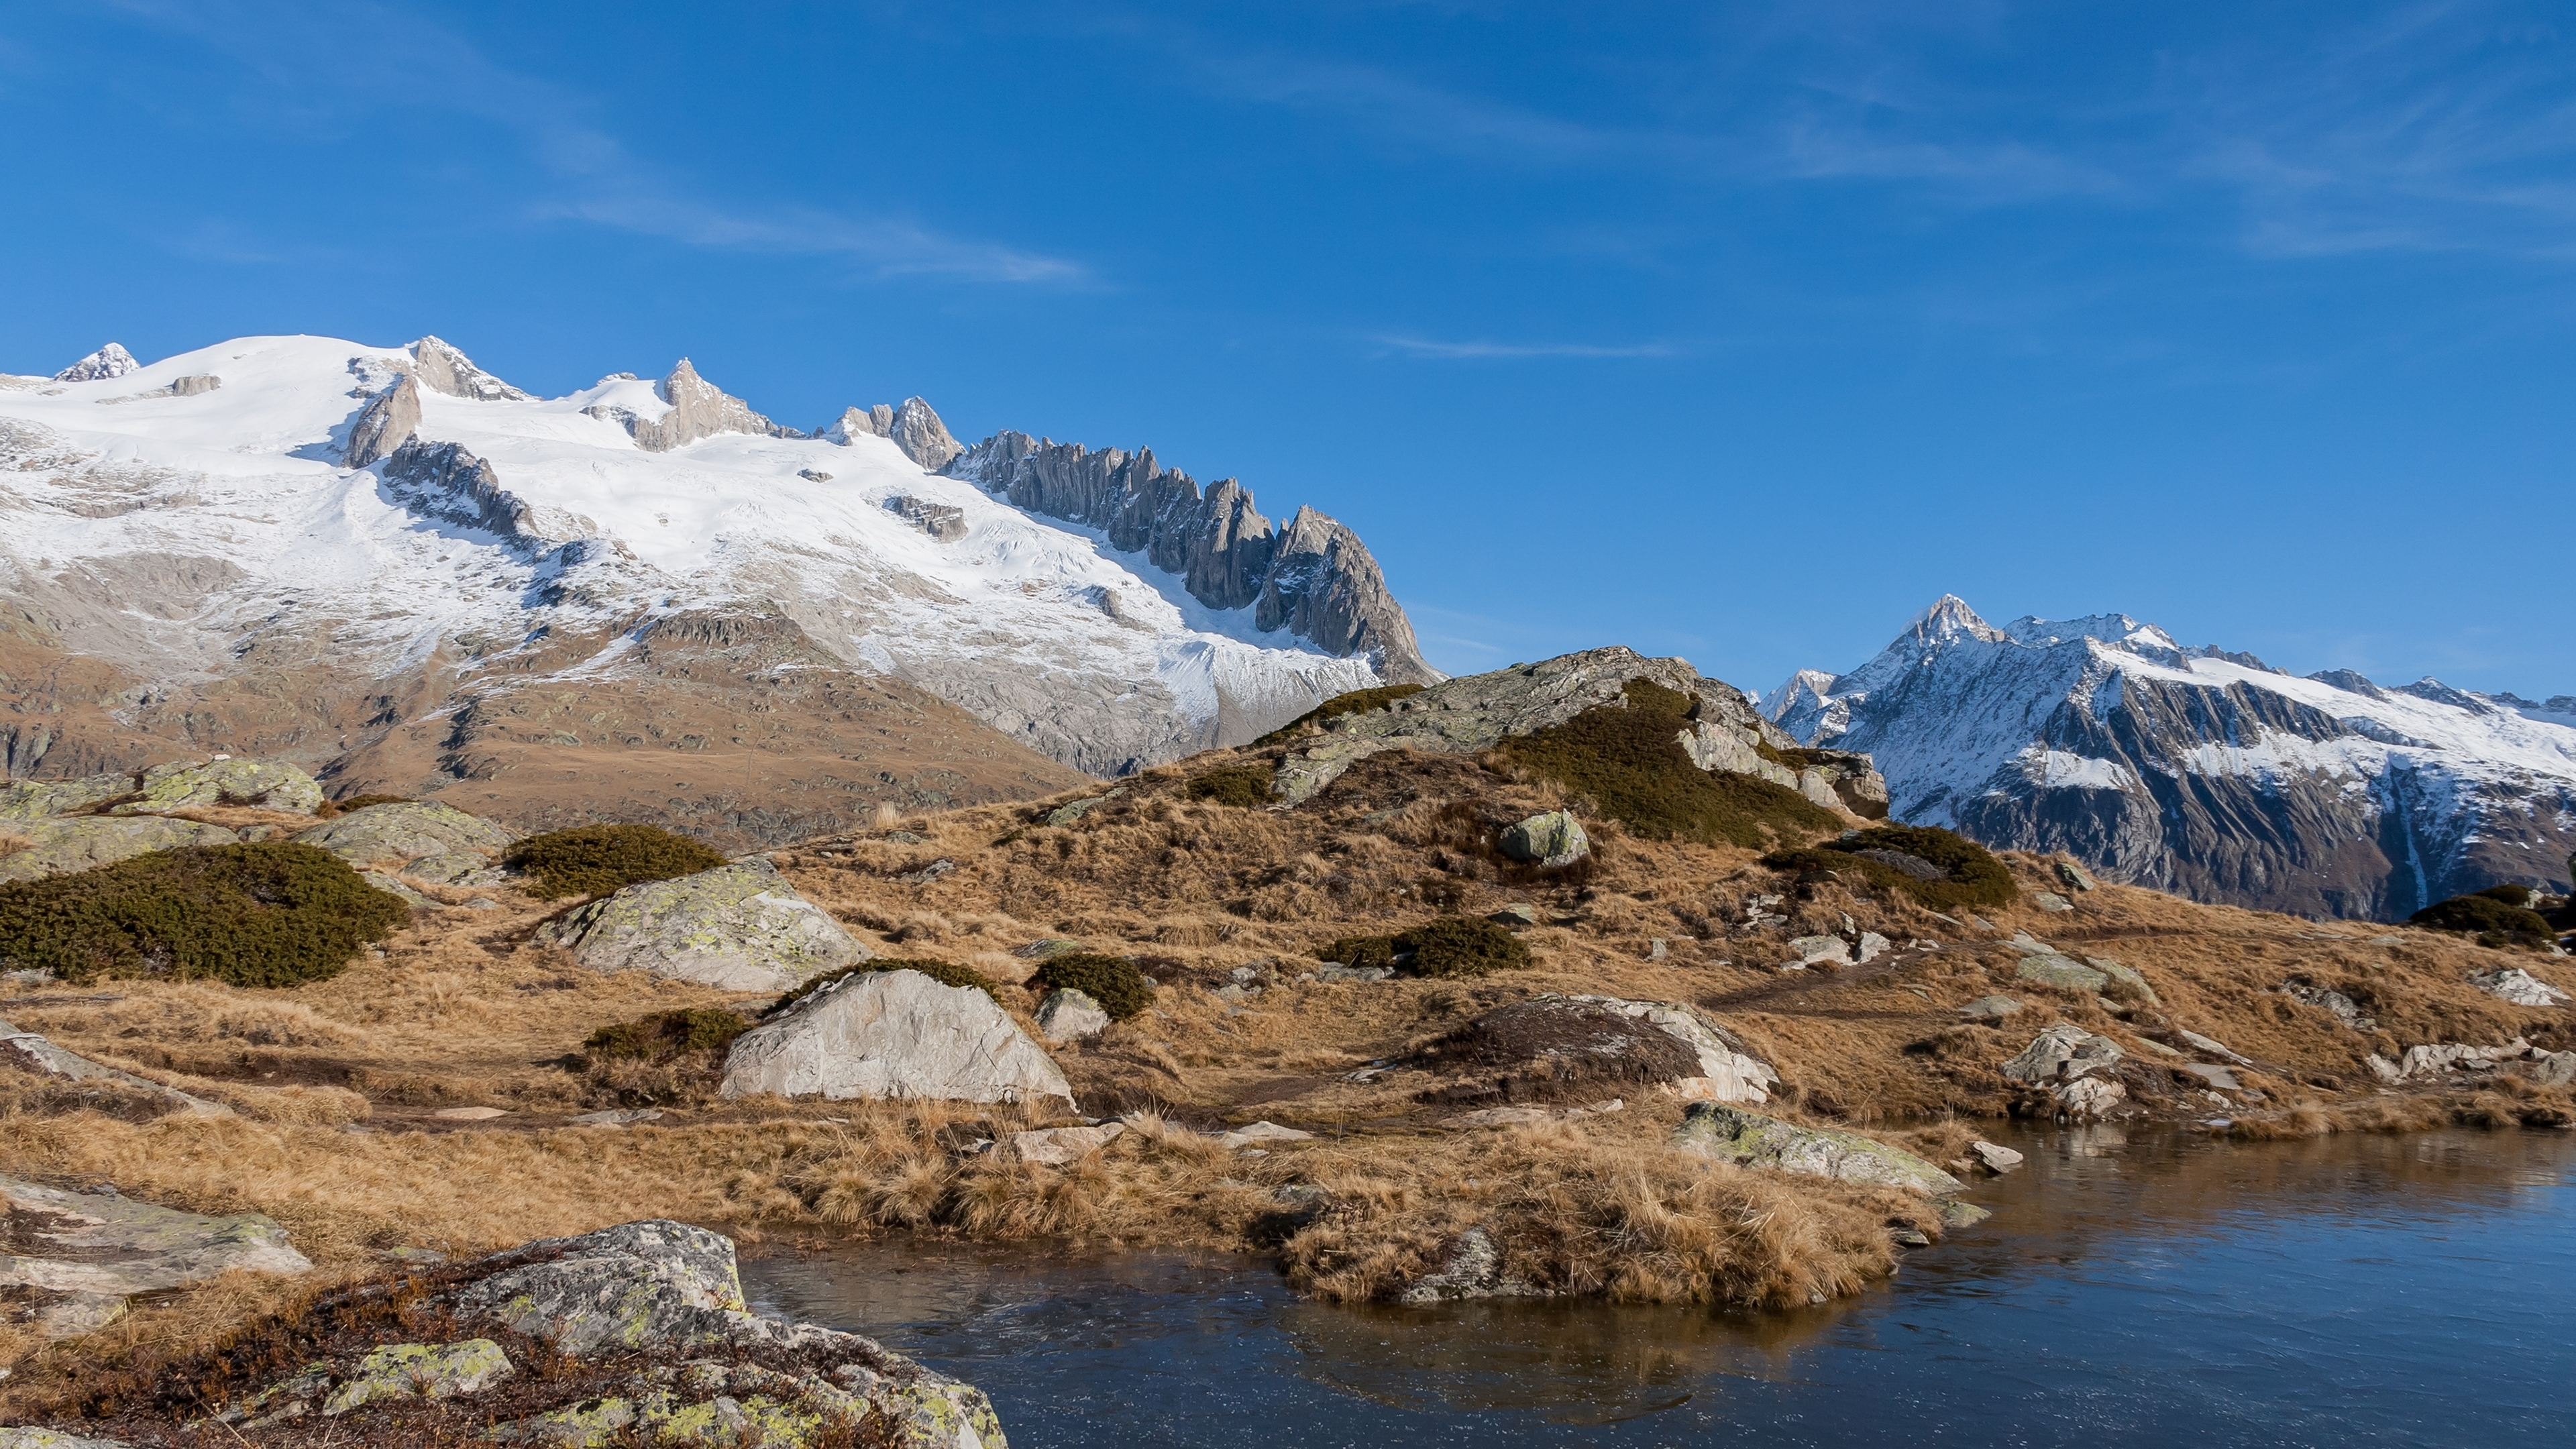 دانلود رایگان عکس چشمه در کوه خوش آب و هوا مخصوص طراحی دیجیتال